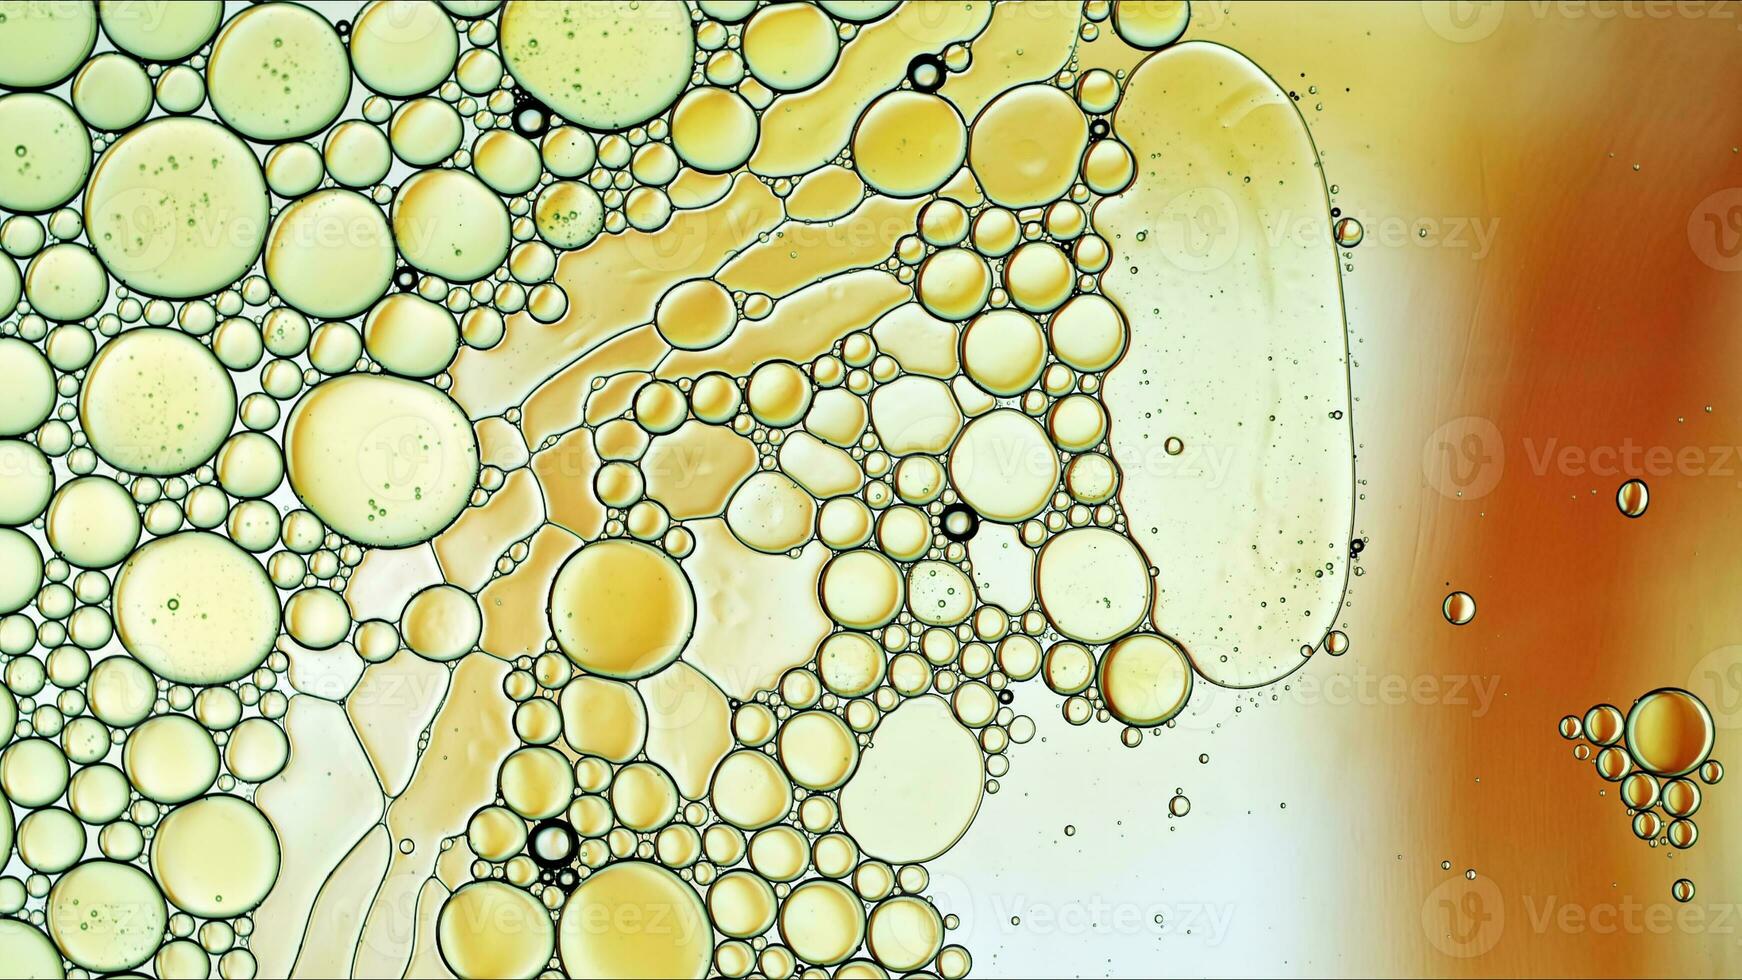 huile alimentaire colorée abstraite laisse tomber des bulles et des sphères qui coule sur la surface de l'eau photo